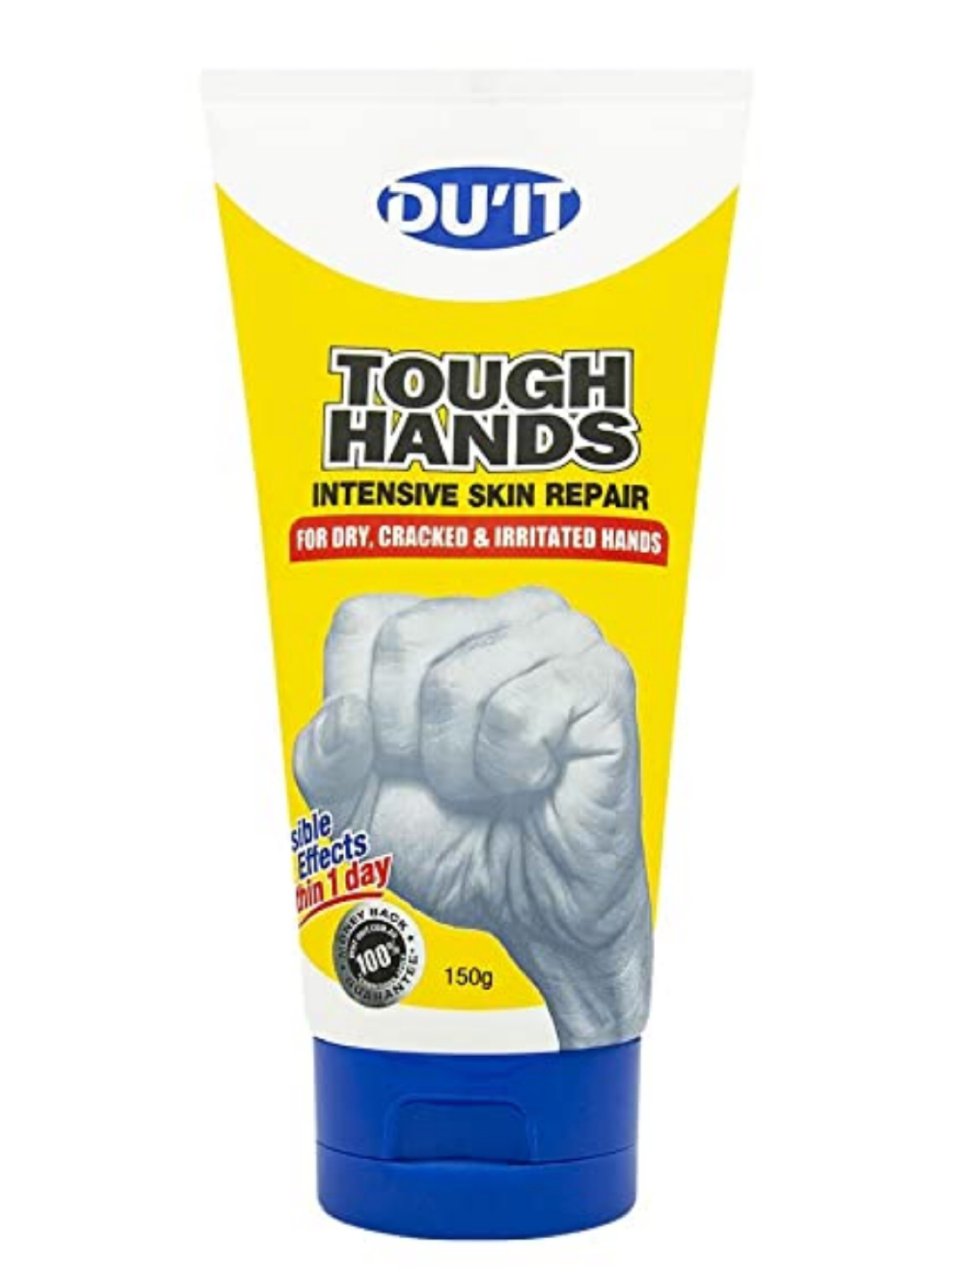 DU'IT Tough Hands, 5.1 Fluid Ounce : Beauty & Personal Care